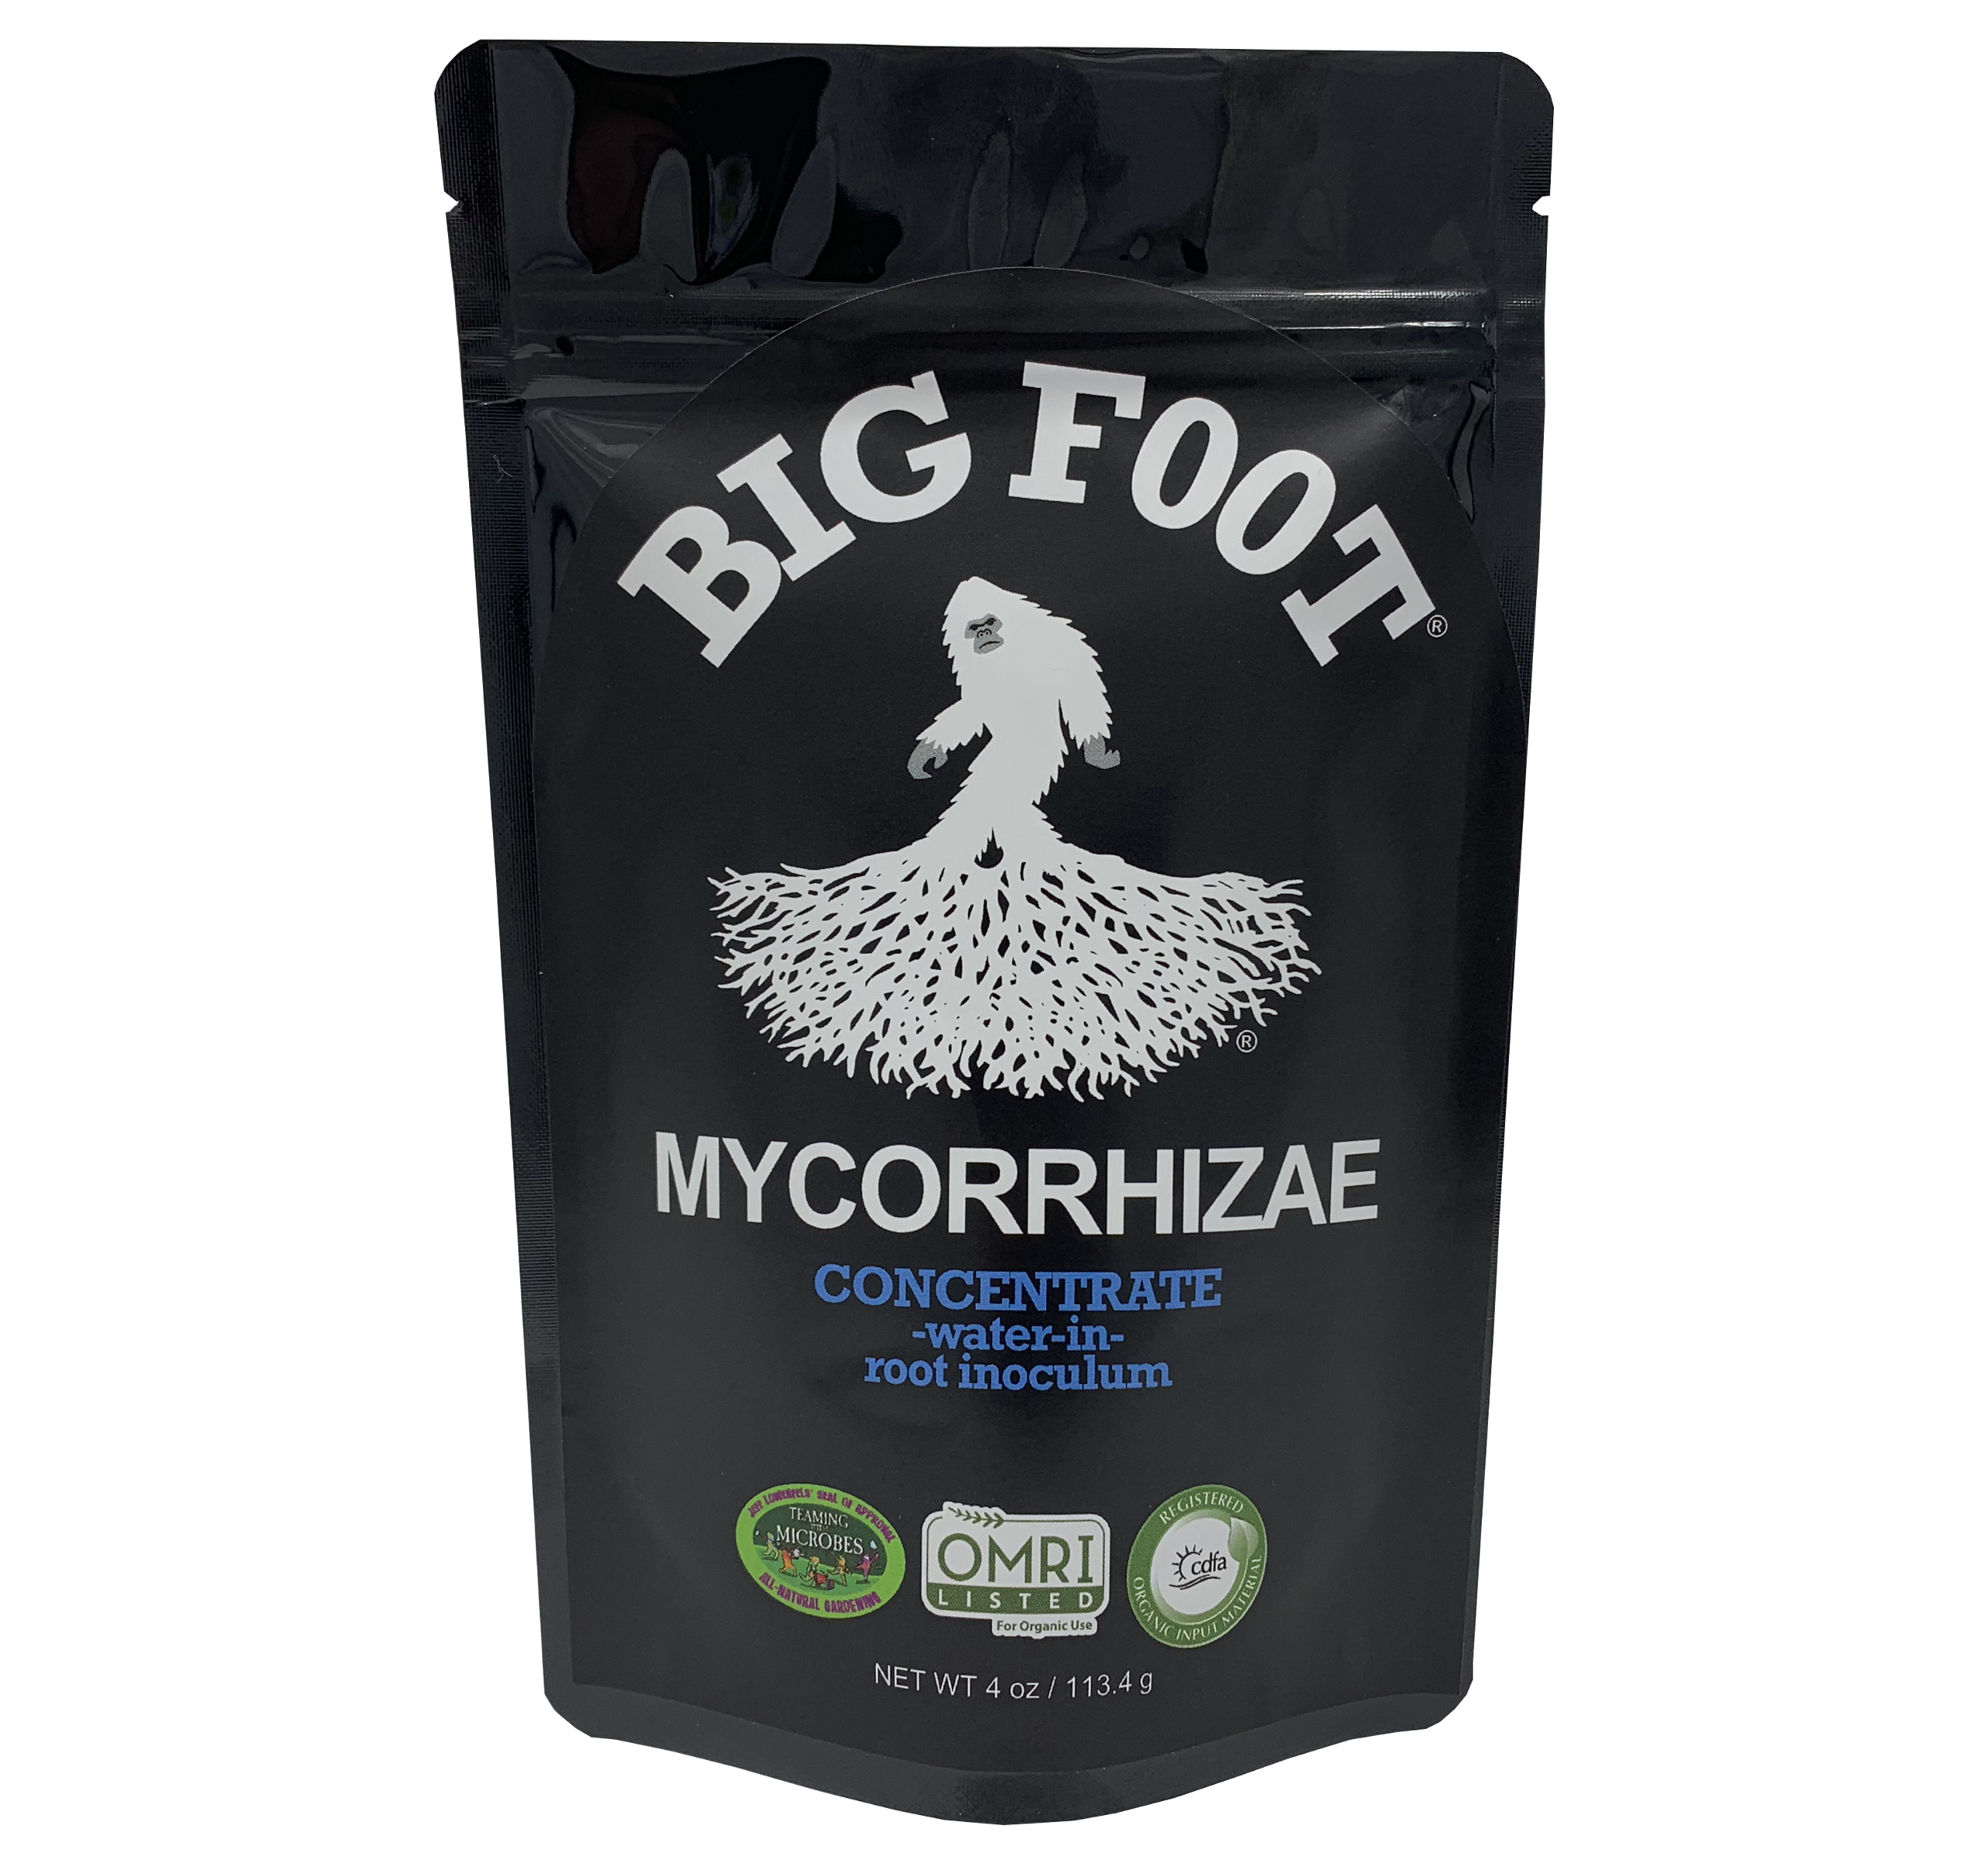 Big Foot Mycorrhizae CONCENTRATE 4 oz - Blue Sky Biochar